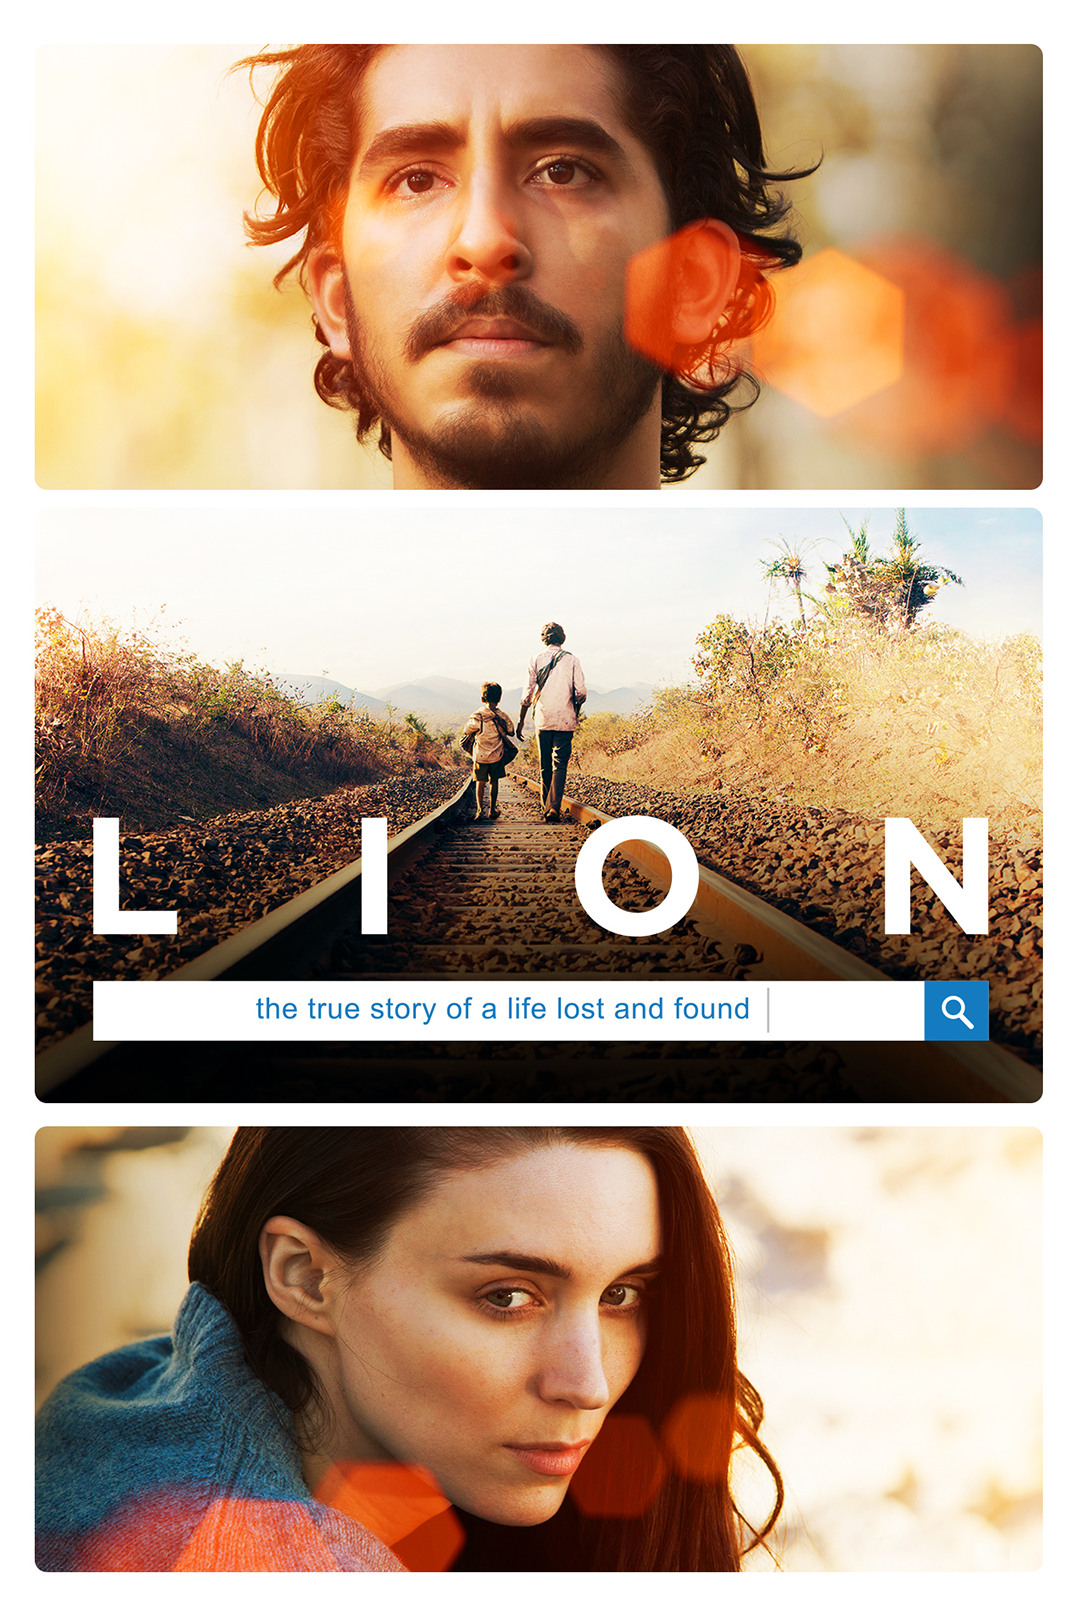 Omslagsbild för filmen Lion